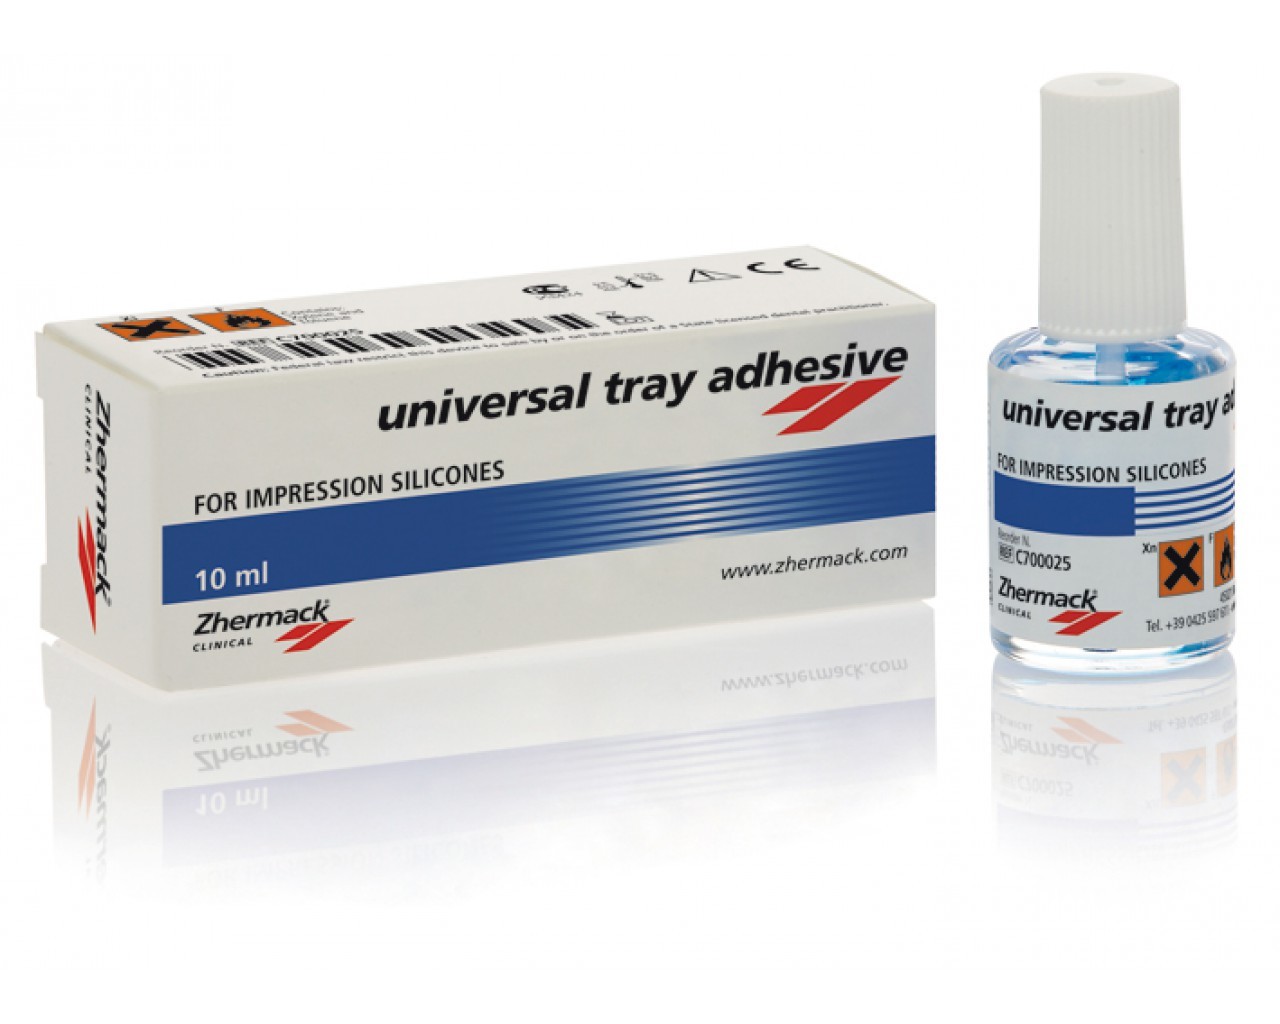 Universal Tray Adhesive, 10мл(Zhermack)